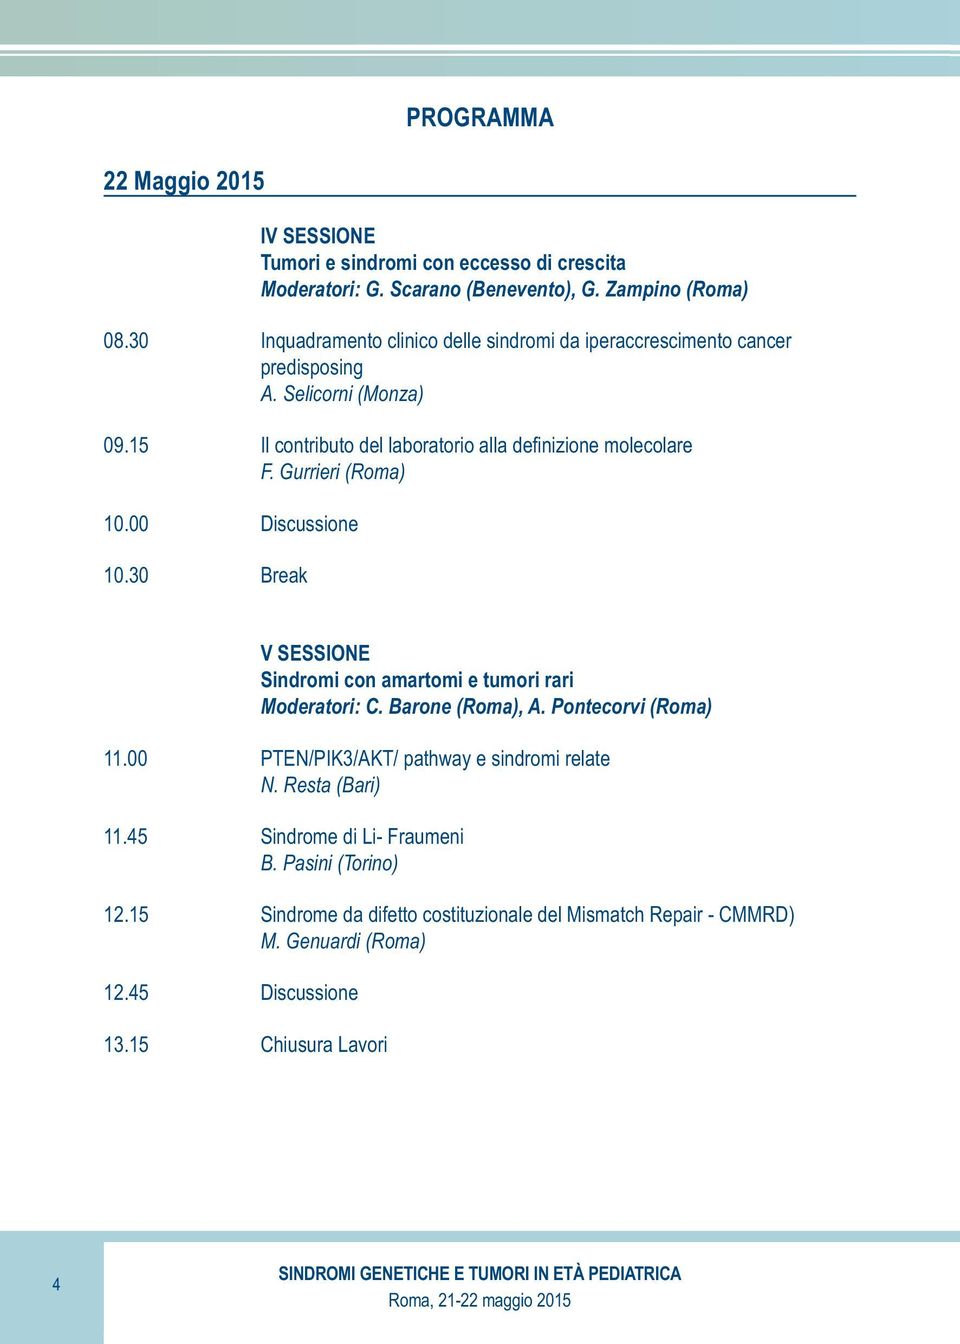 Gurrieri () 10.00 Discussione 10.30 Break V SESSIONE Sindromi con amartomi e tumori rari Moderatori: C. Barone (), A. Pontecorvi () 11.